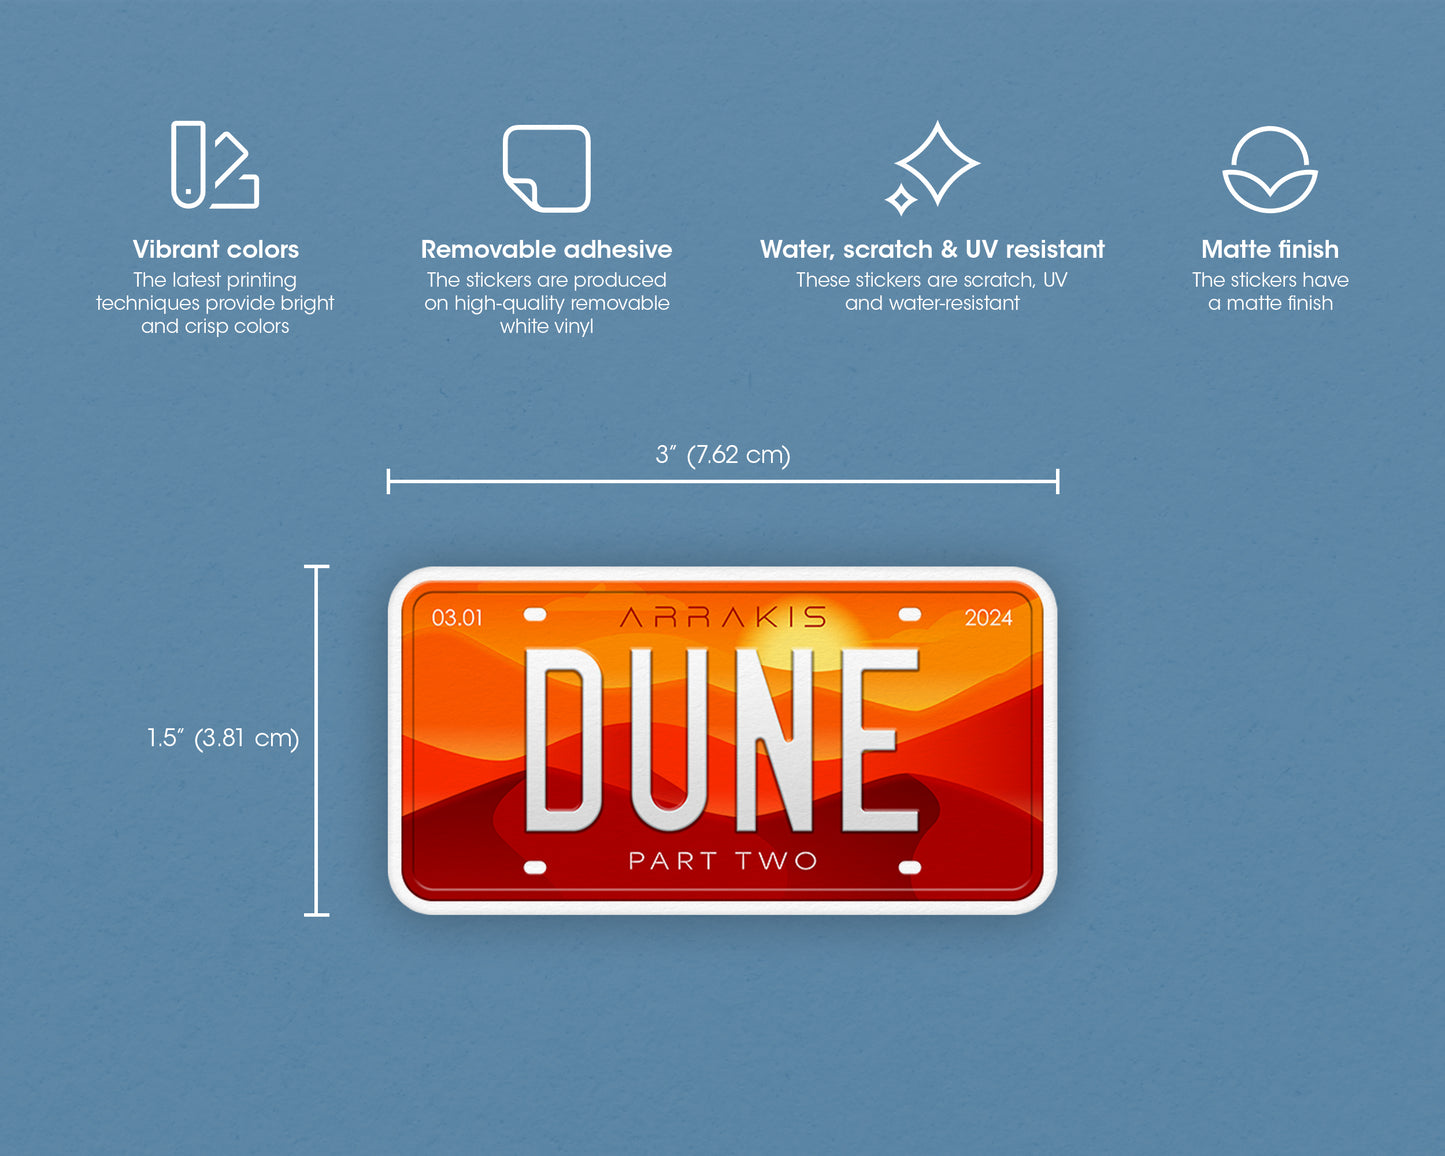 Dune Part 2 (2024) movie sticker